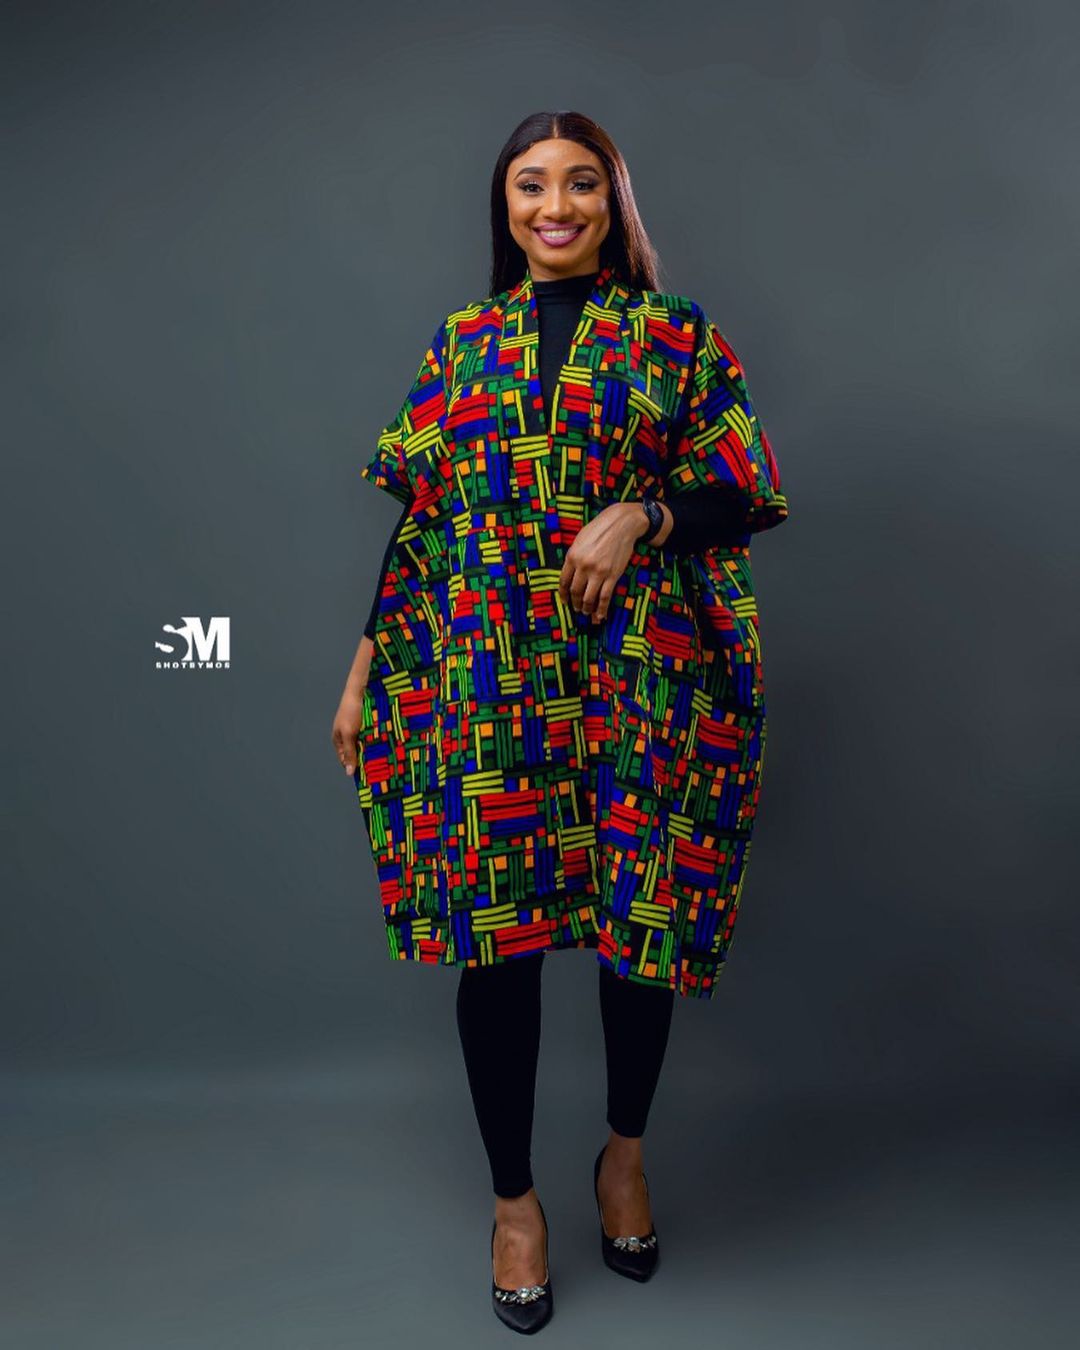 Kimono Outfit - Trending Ankara Kimono Jackets And Dresses For 2021 -  Fashion - Nigeria